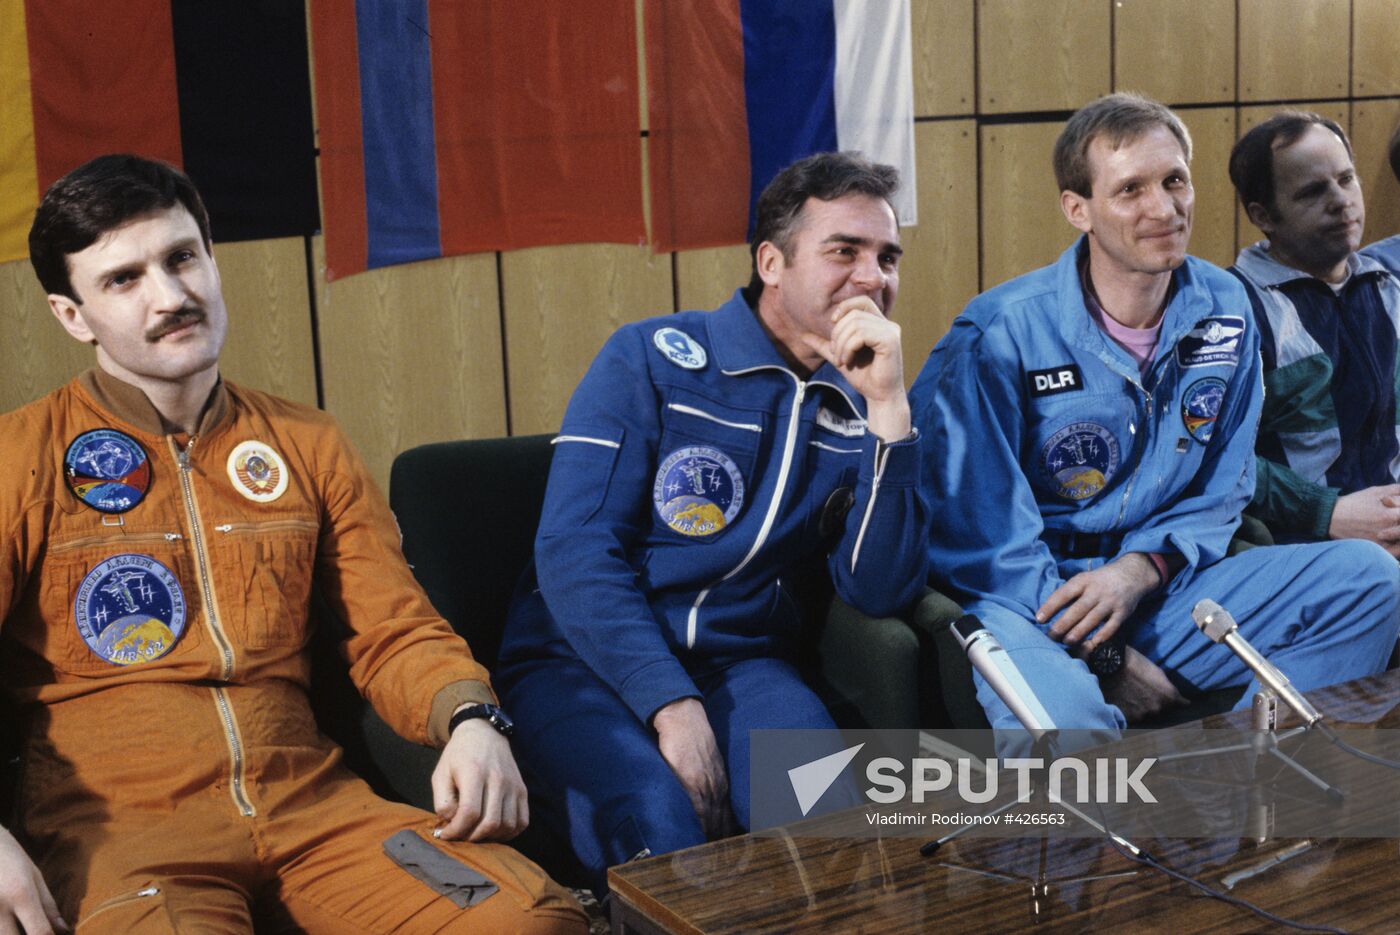 Crew of spaceship "Soyuz TM-14"